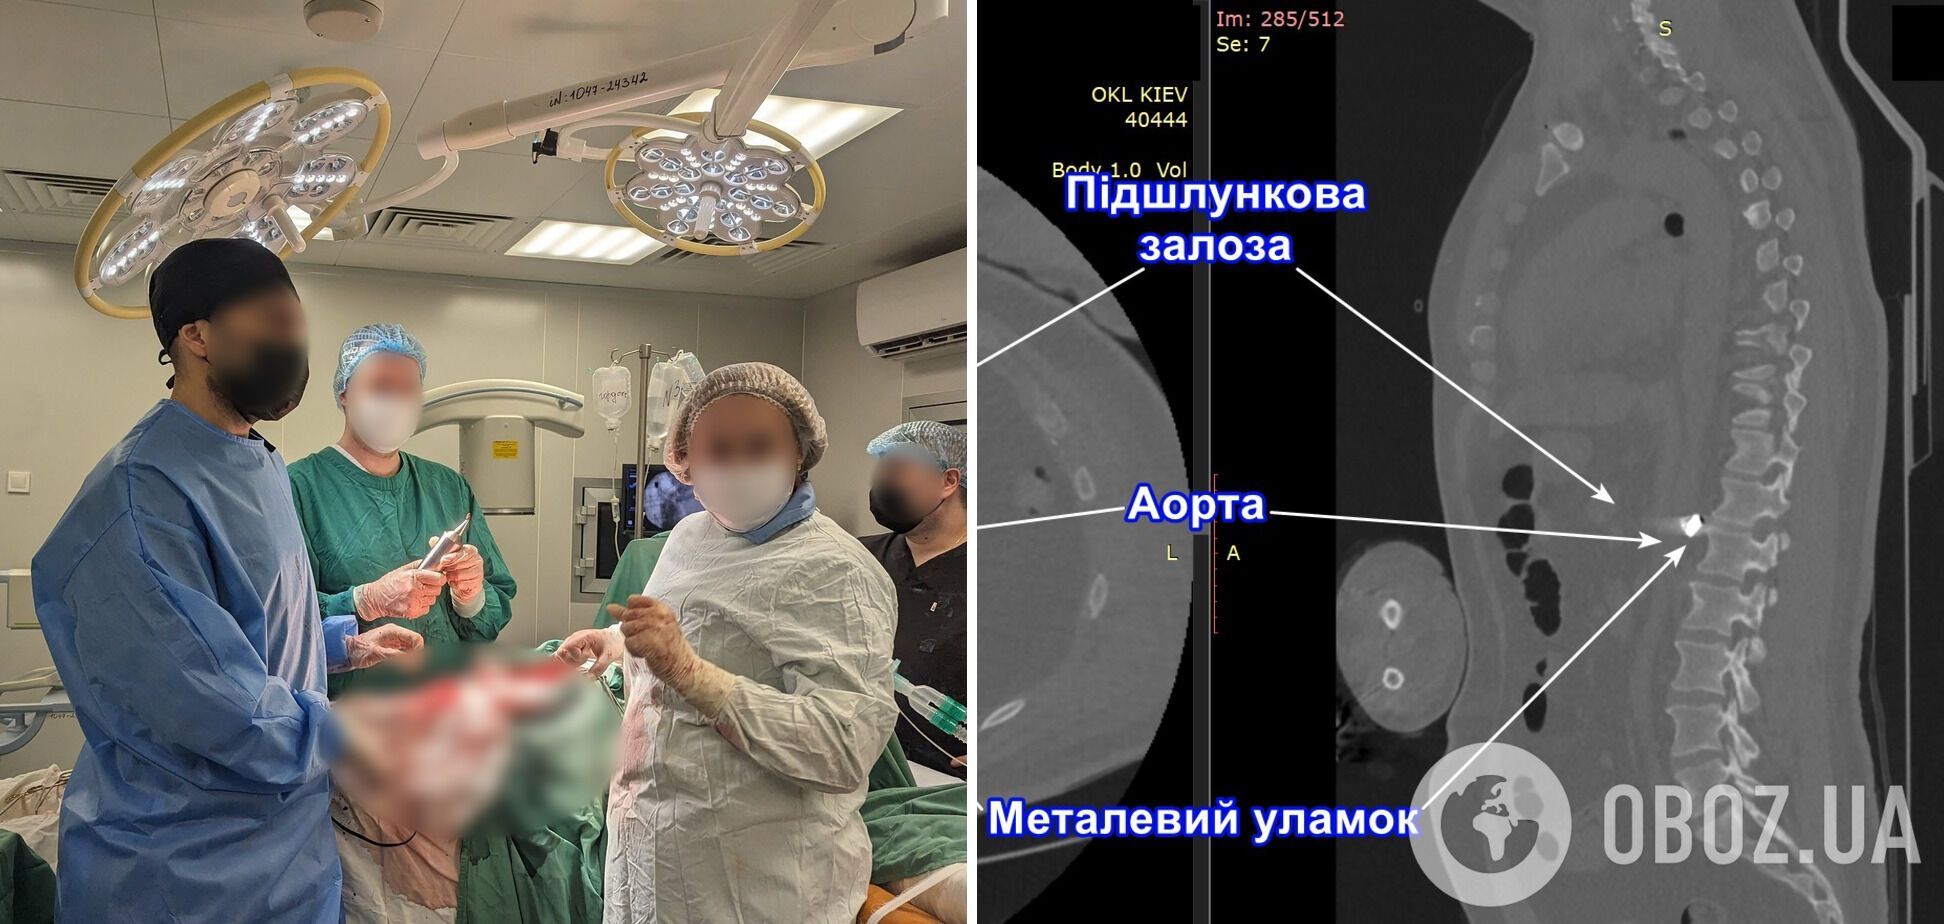 Украинские врачи провели сверхсложную операцию и спасли воину жизнь: обломок был на стенке аорты